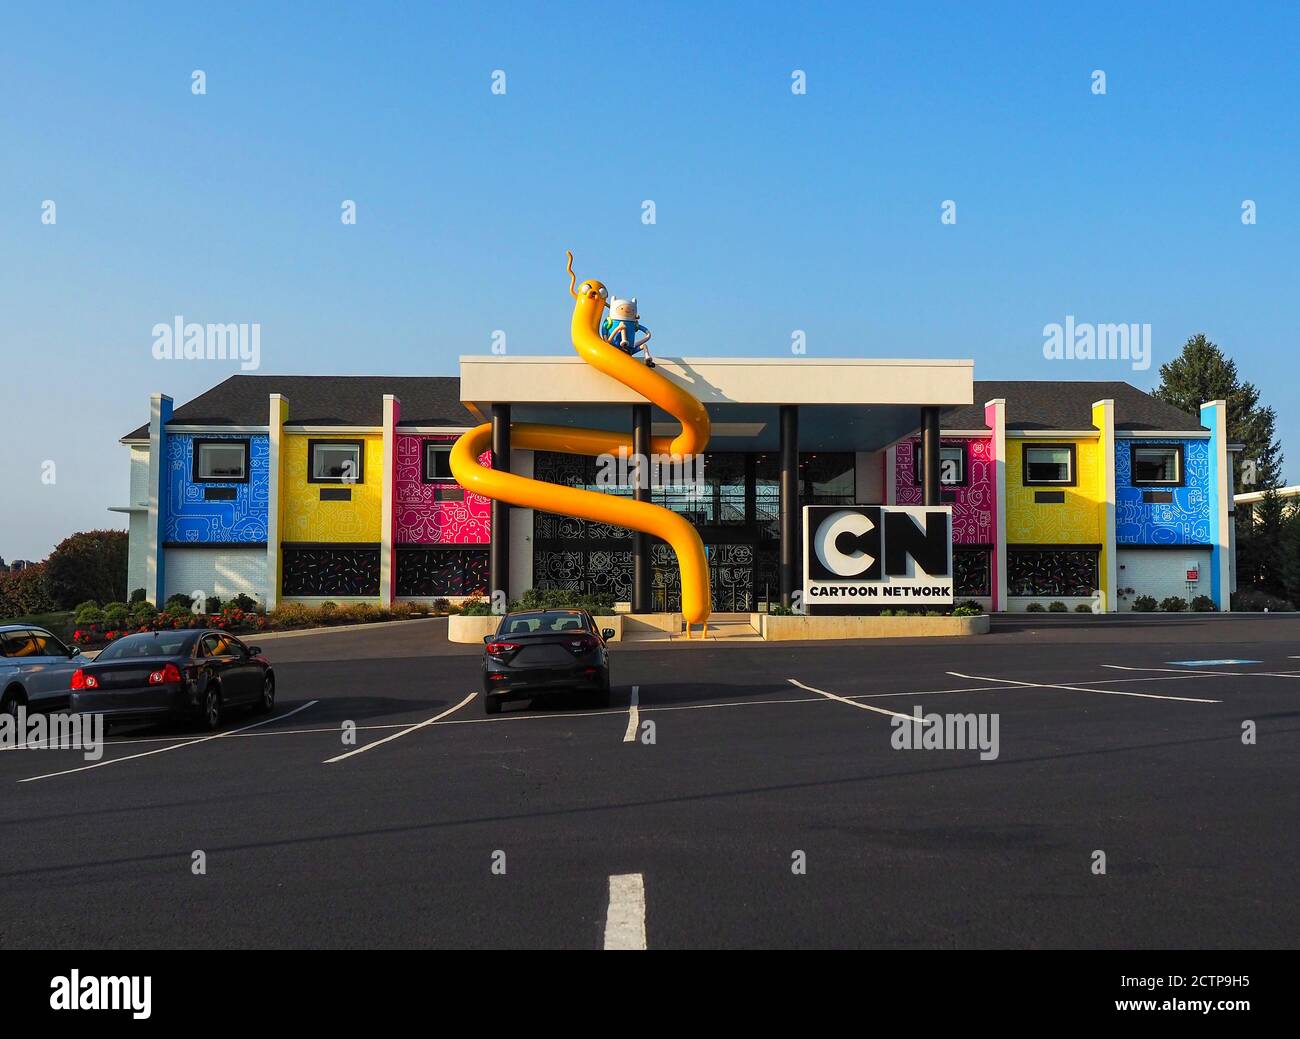 LANCASTER, PENNSYLVANIE - 22 SEPTEMBRE 2020 : l'hôtel Cartoon Network a ouvert ses portes le 10 janvier 2020 sur la Lincoln Highway, un transcontin aimé par muc Banque D'Images